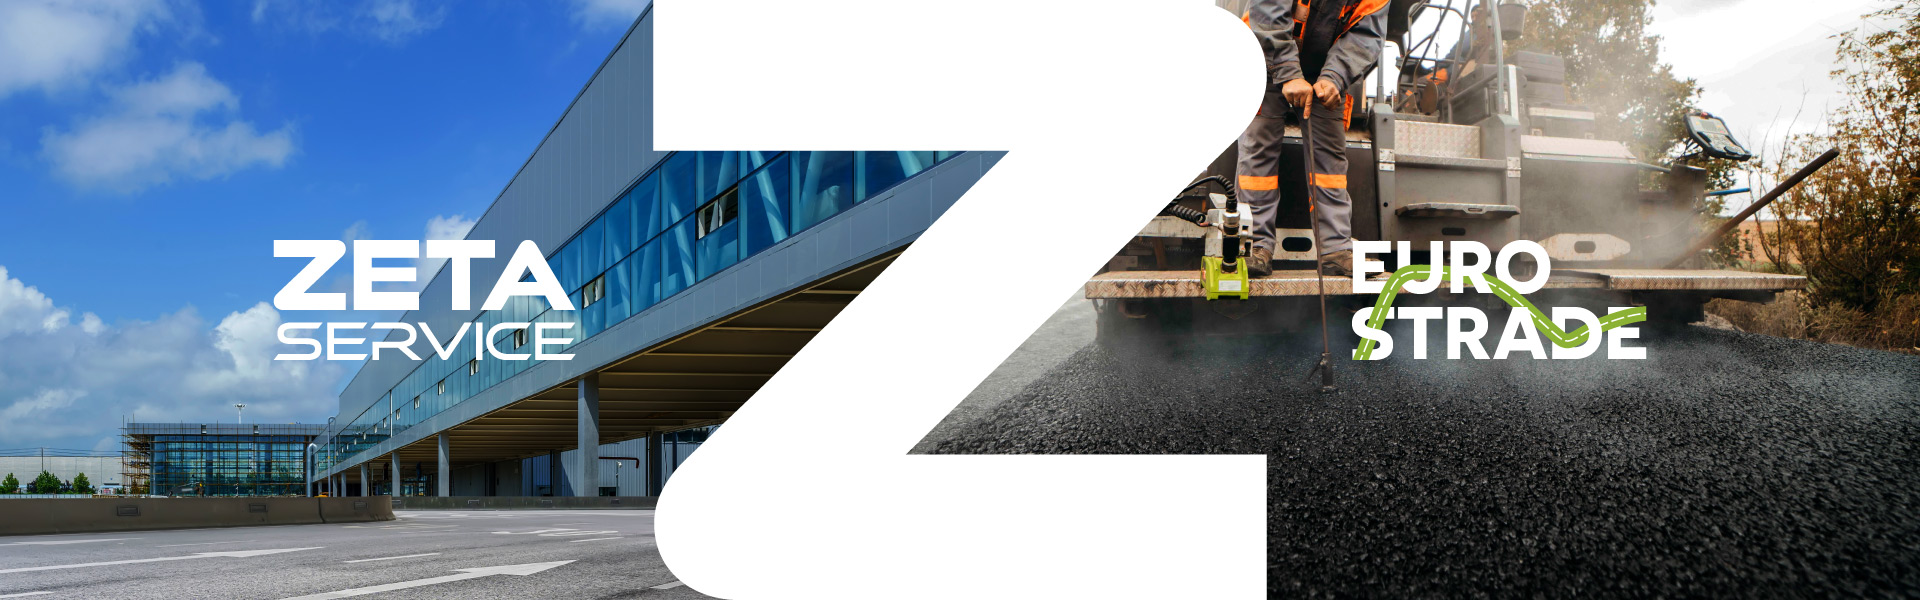 Impresa generale costruzioni: Zeta Group. Zeta Service & Eurostrade